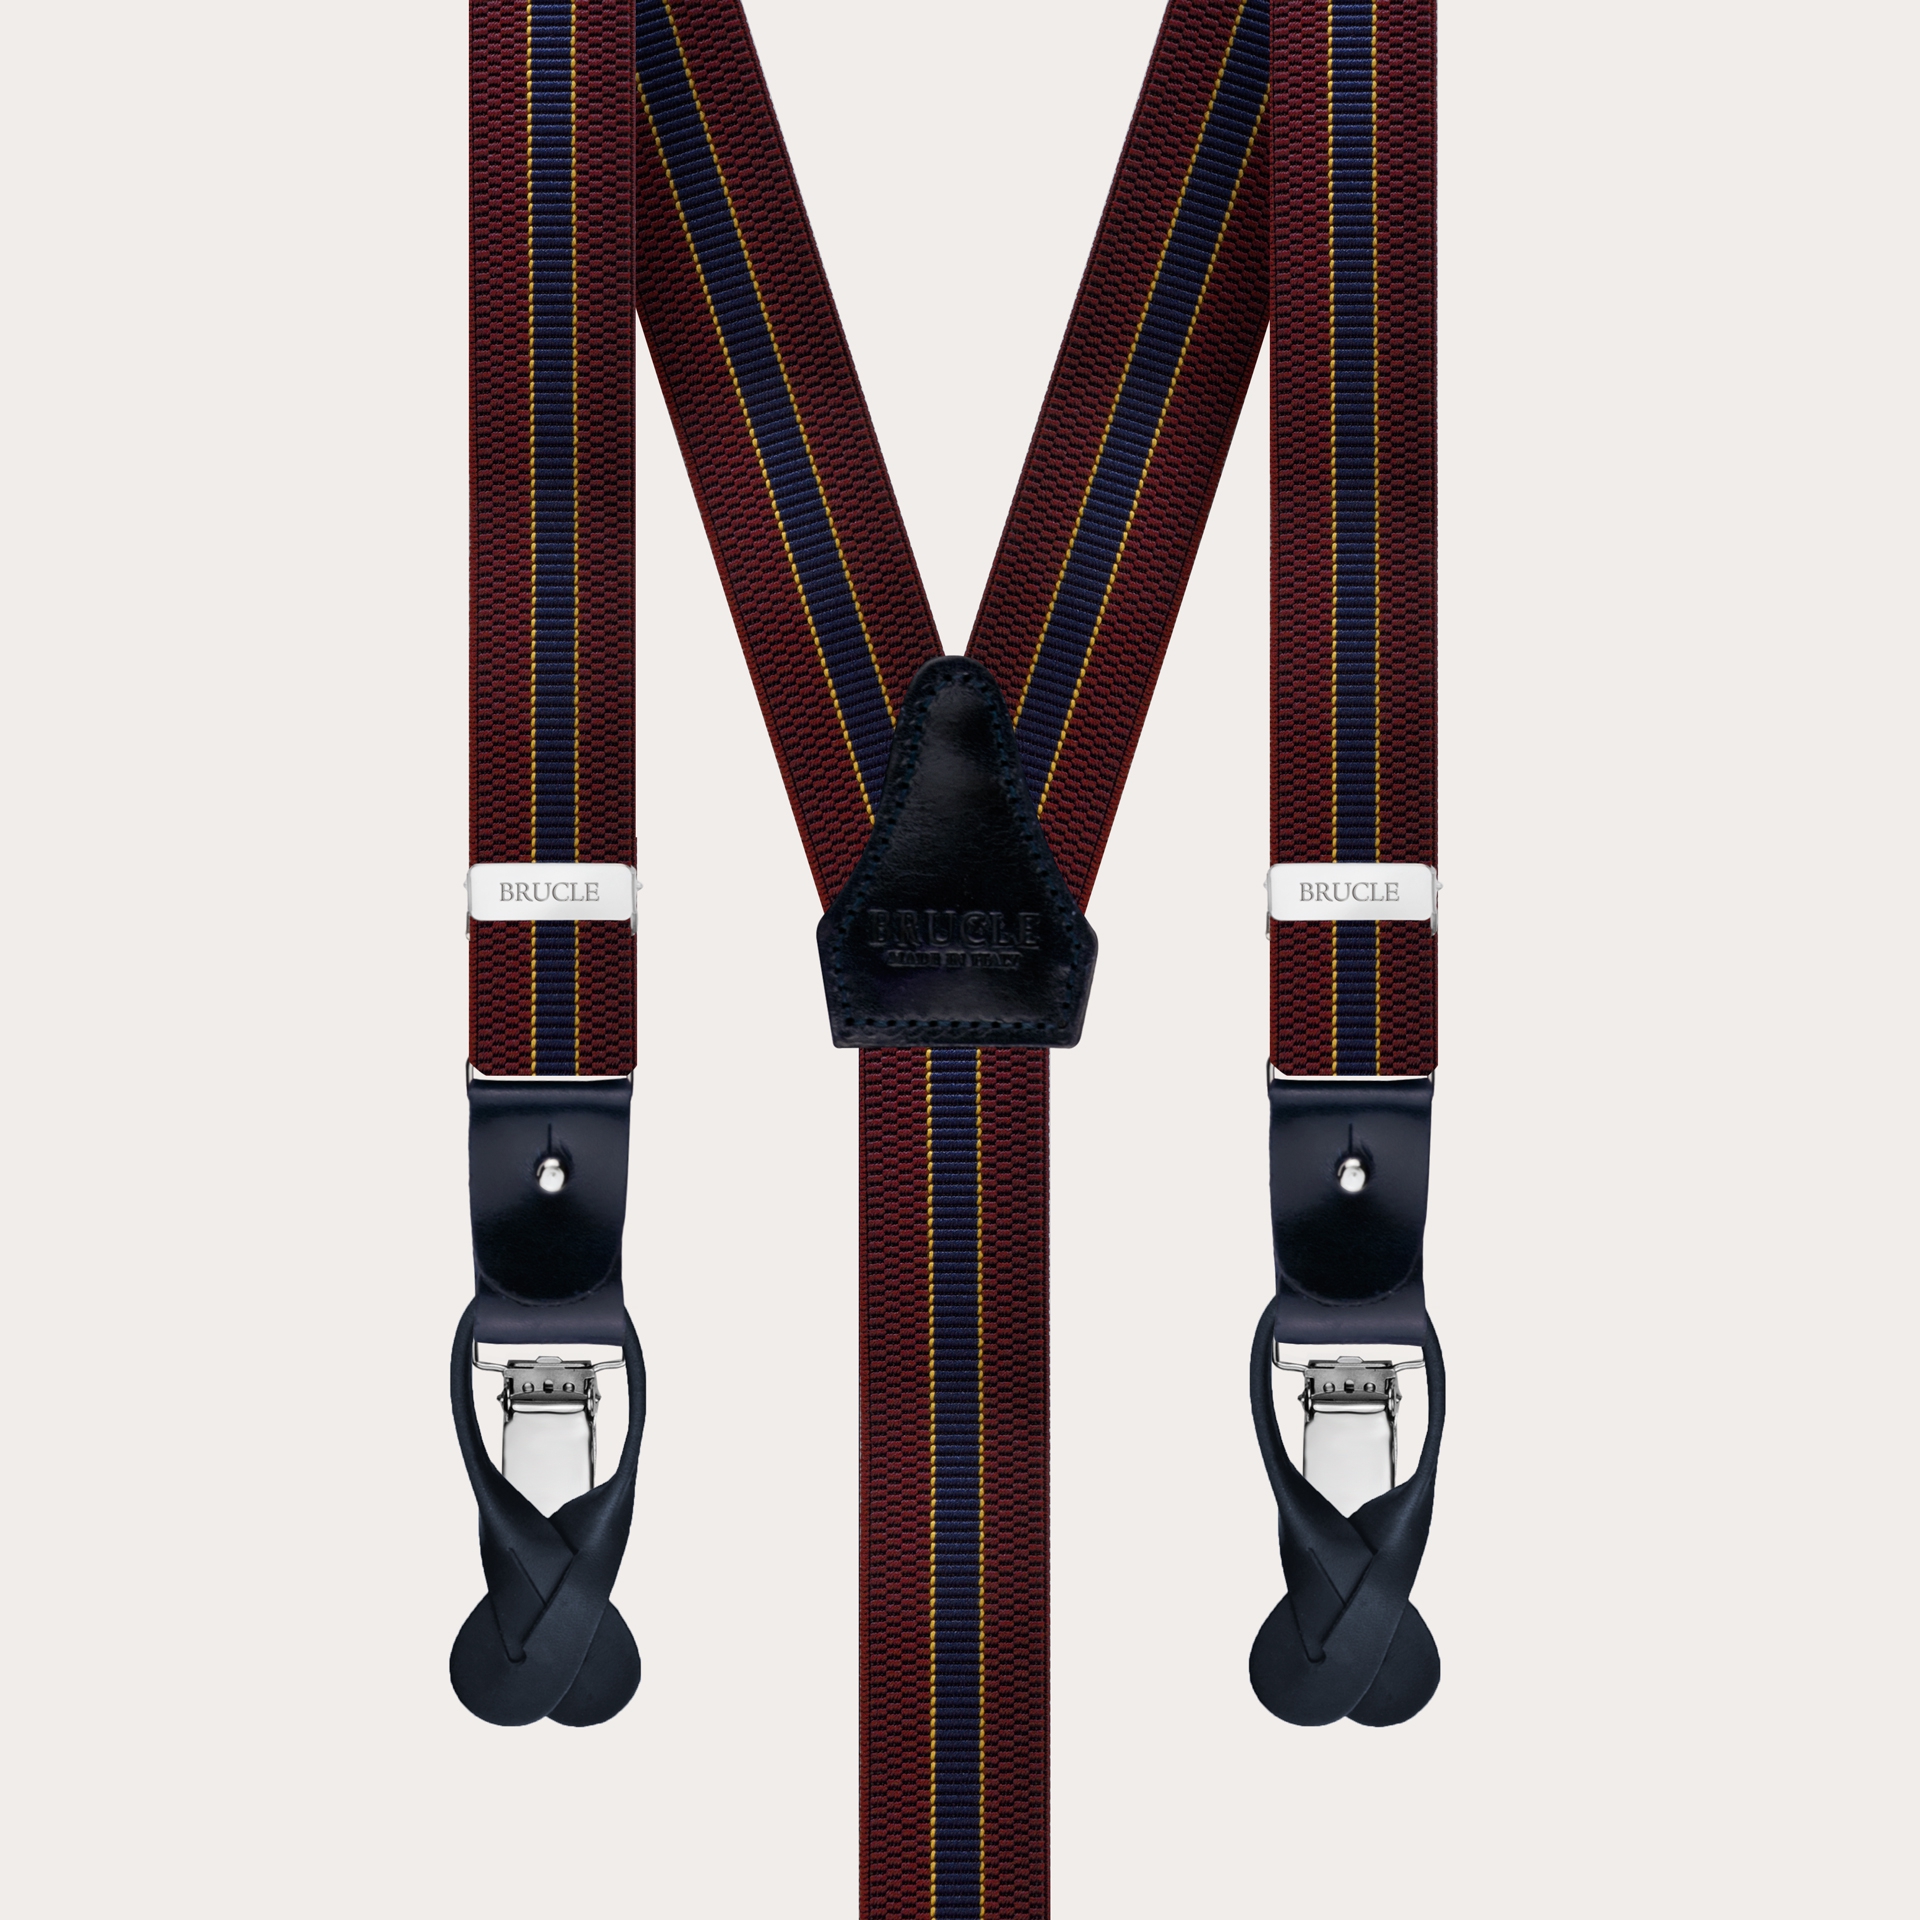 BRUCLE Y-shape elastic suspenders, burgundy and blue regimental